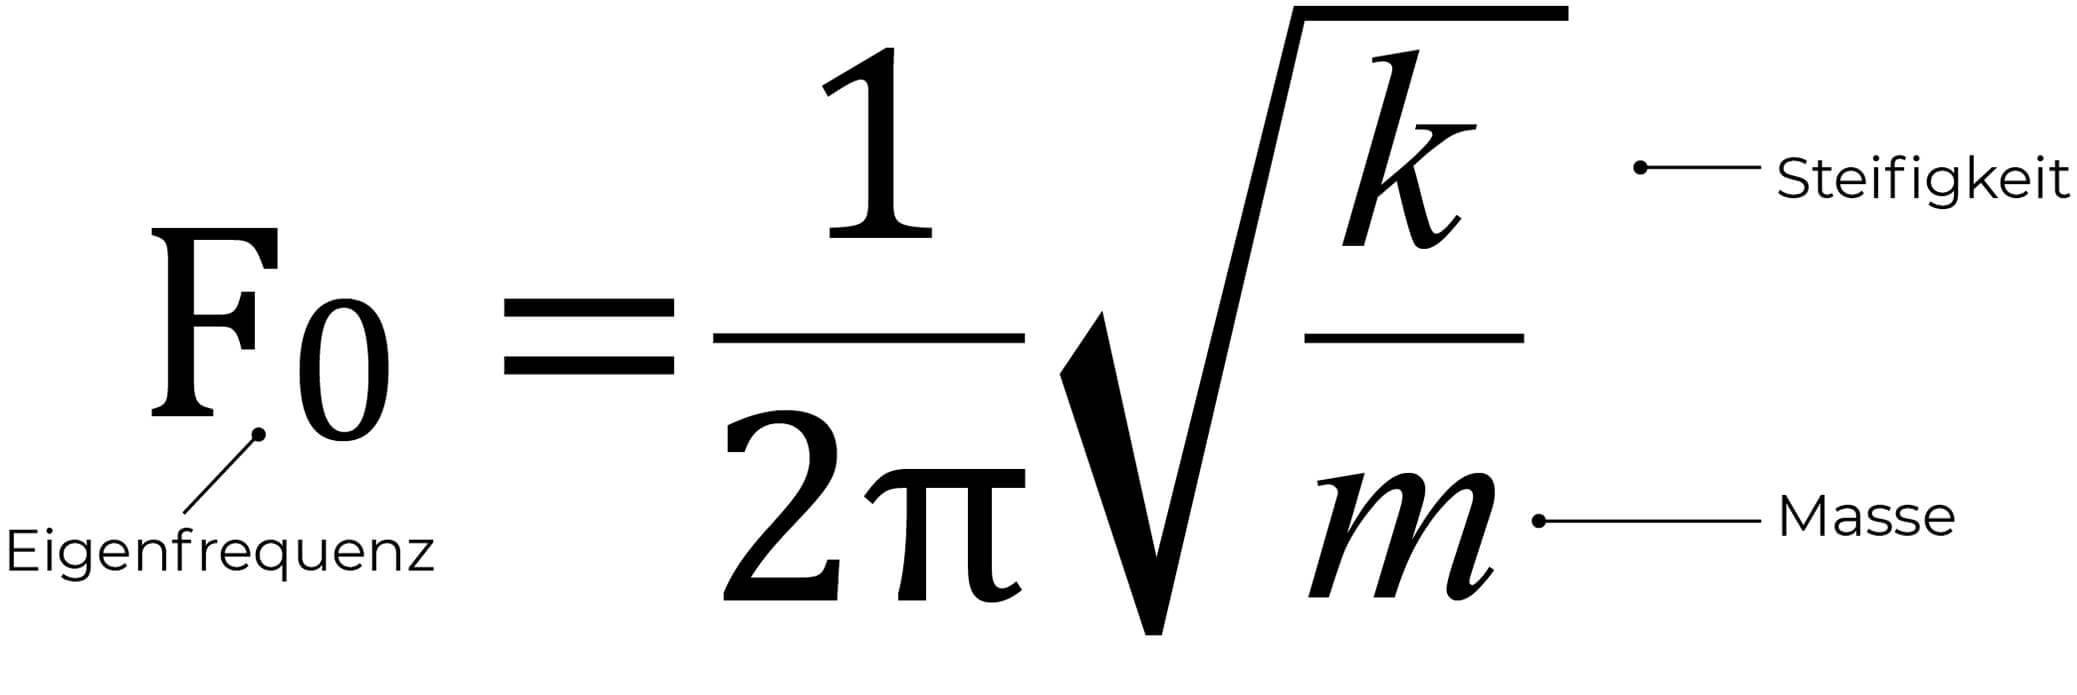 Bild 4: Eigenfrequenz-Formel, in der K die Steifigkeit des Motorlagers und M die Masse des Motors sind.